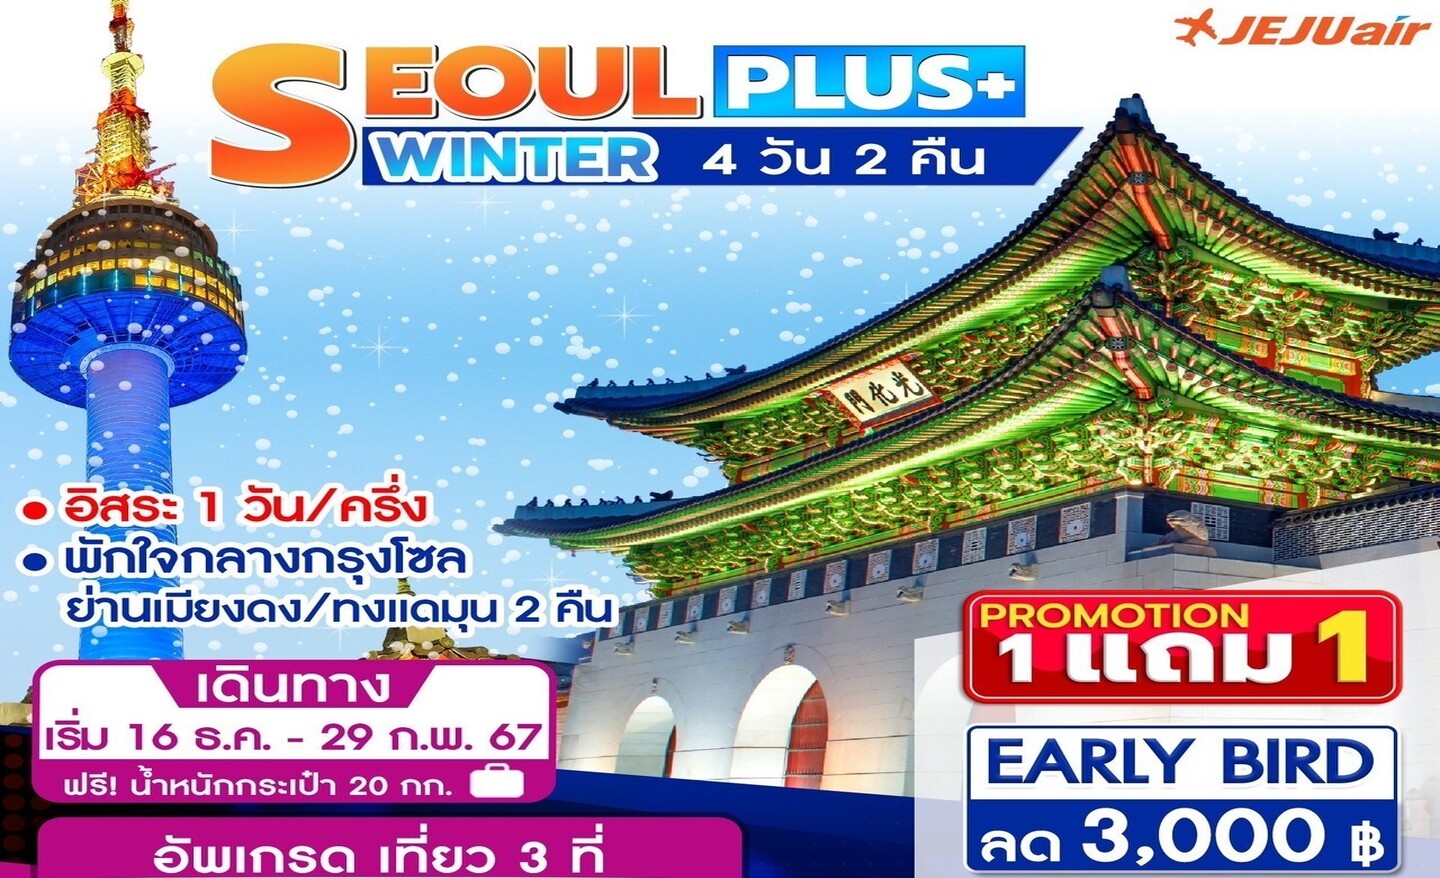 ทัวร์เกาหลี Seoul Plus+ Winter 4D2N (ธ.ค.-ก.พ.67)